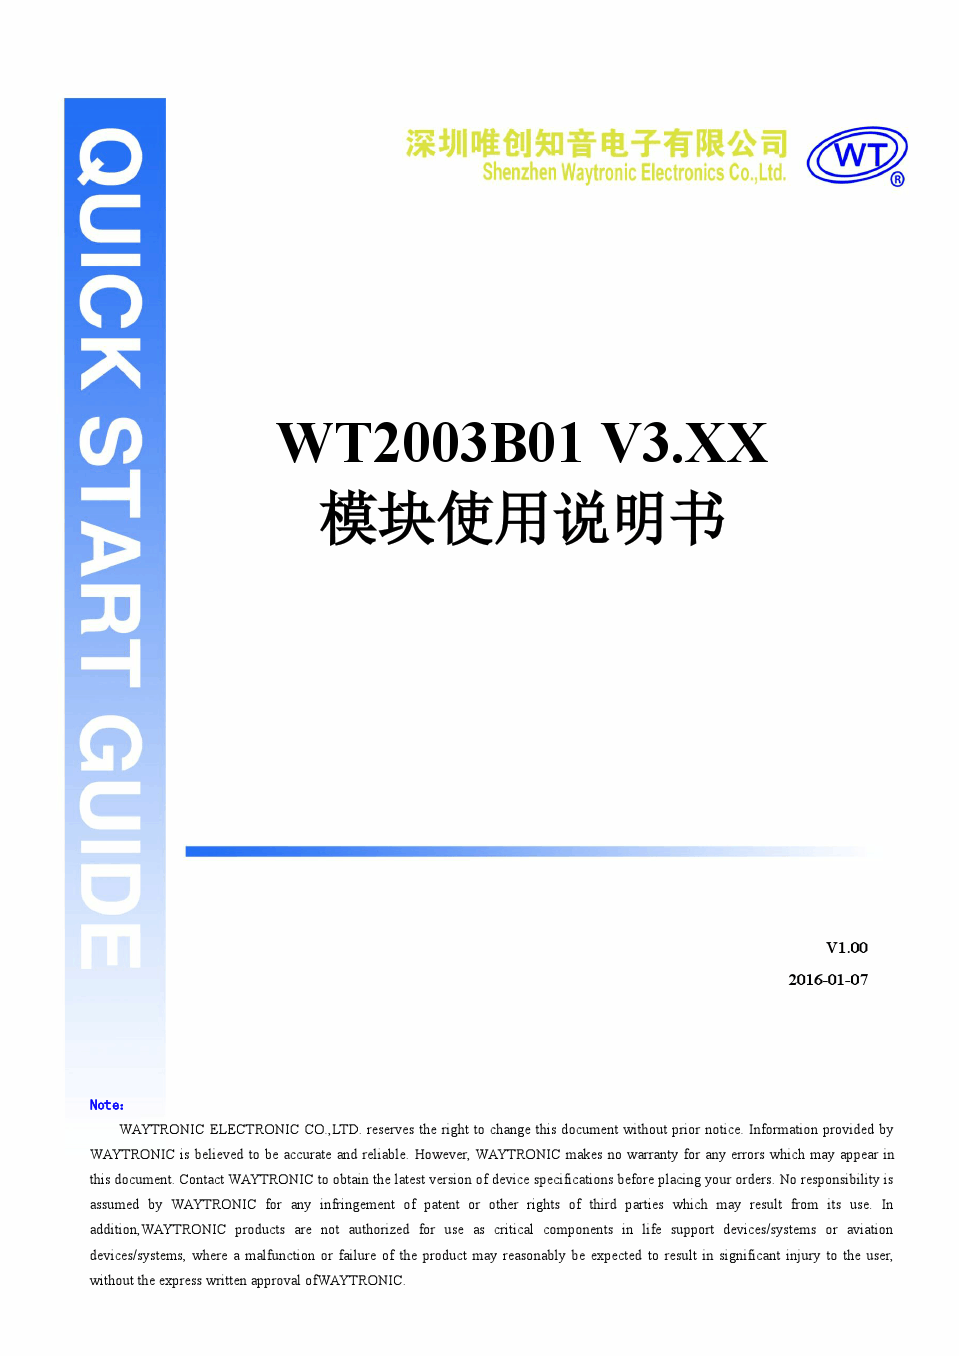 WT2003B01 V3.XX模块使用说明书V1.00